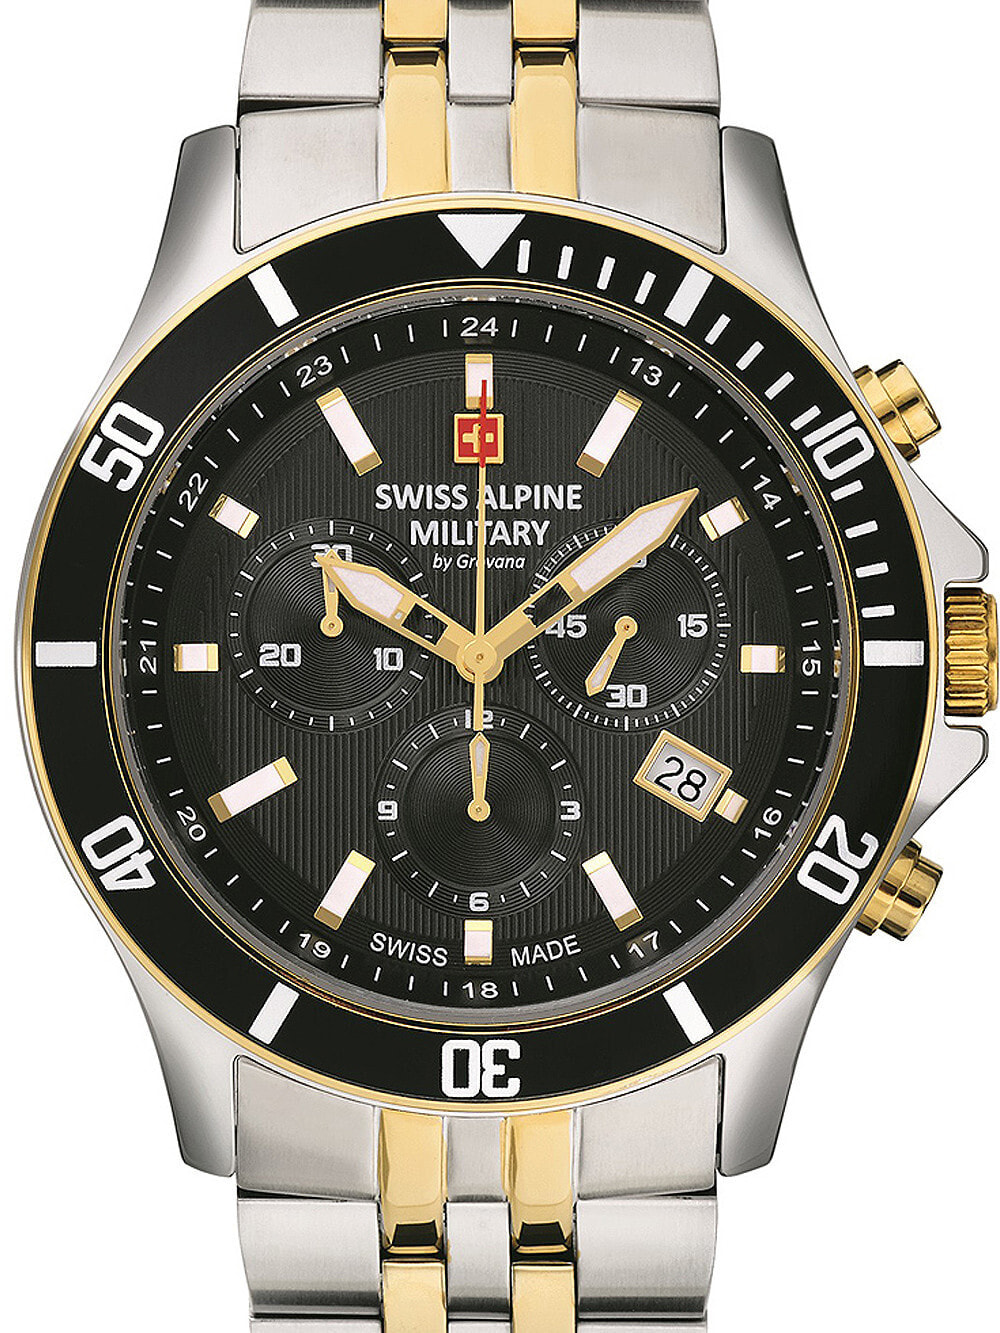 Мужские наручные часы с серебряным браслетом Swiss Alpine Military 7022.9147 chronograph 42mm 10ATM